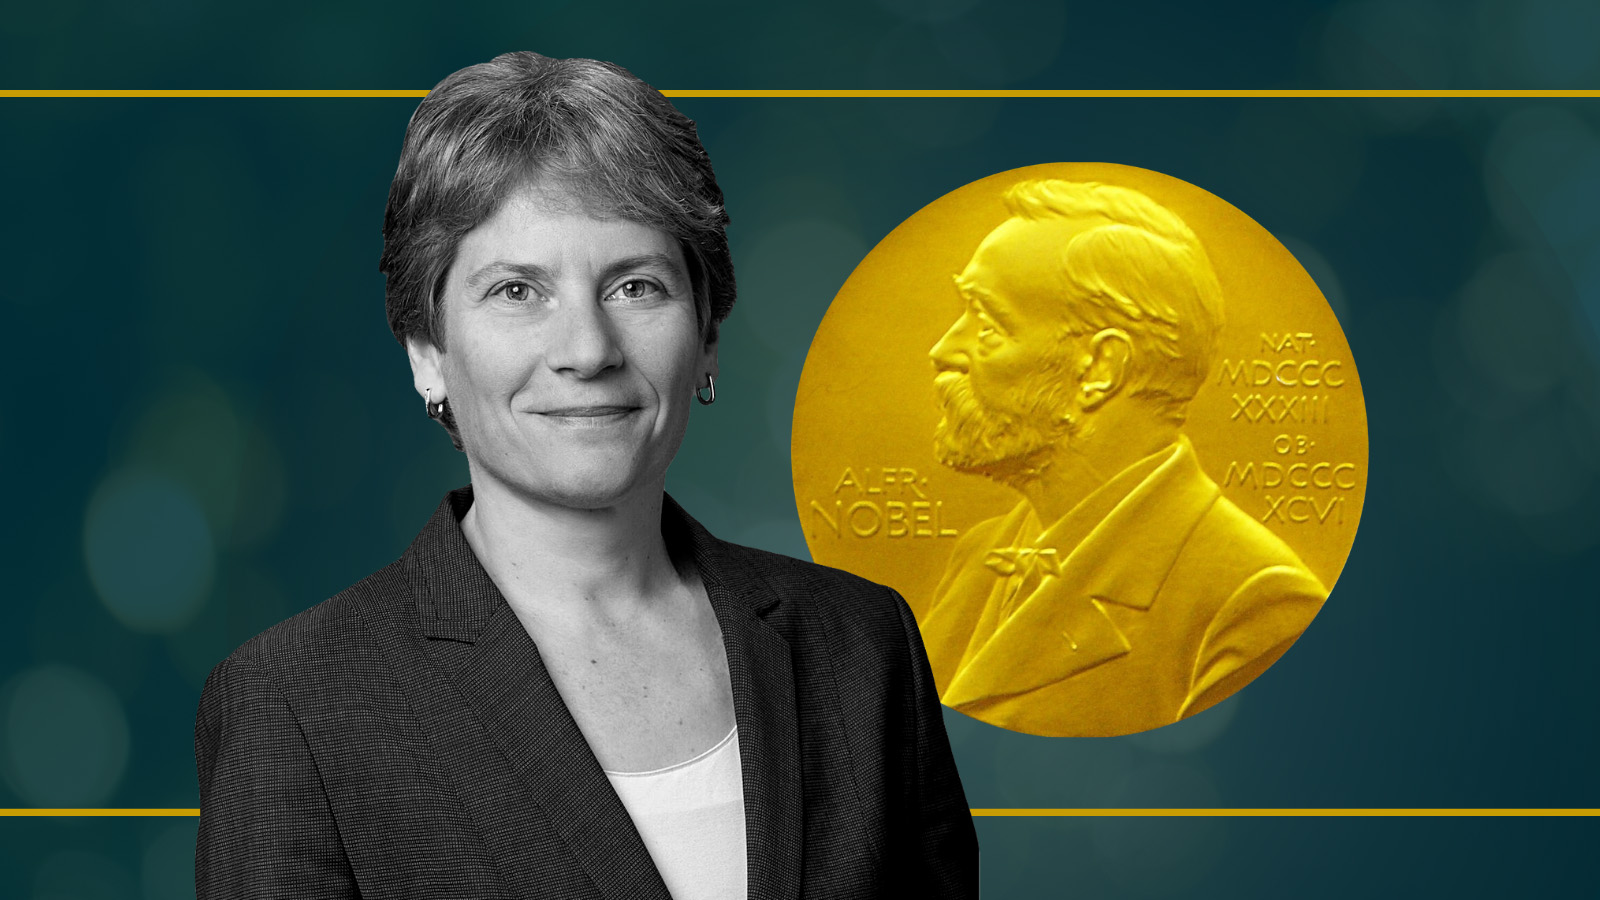 Nobel Prize - Awards, Sciences, Peace